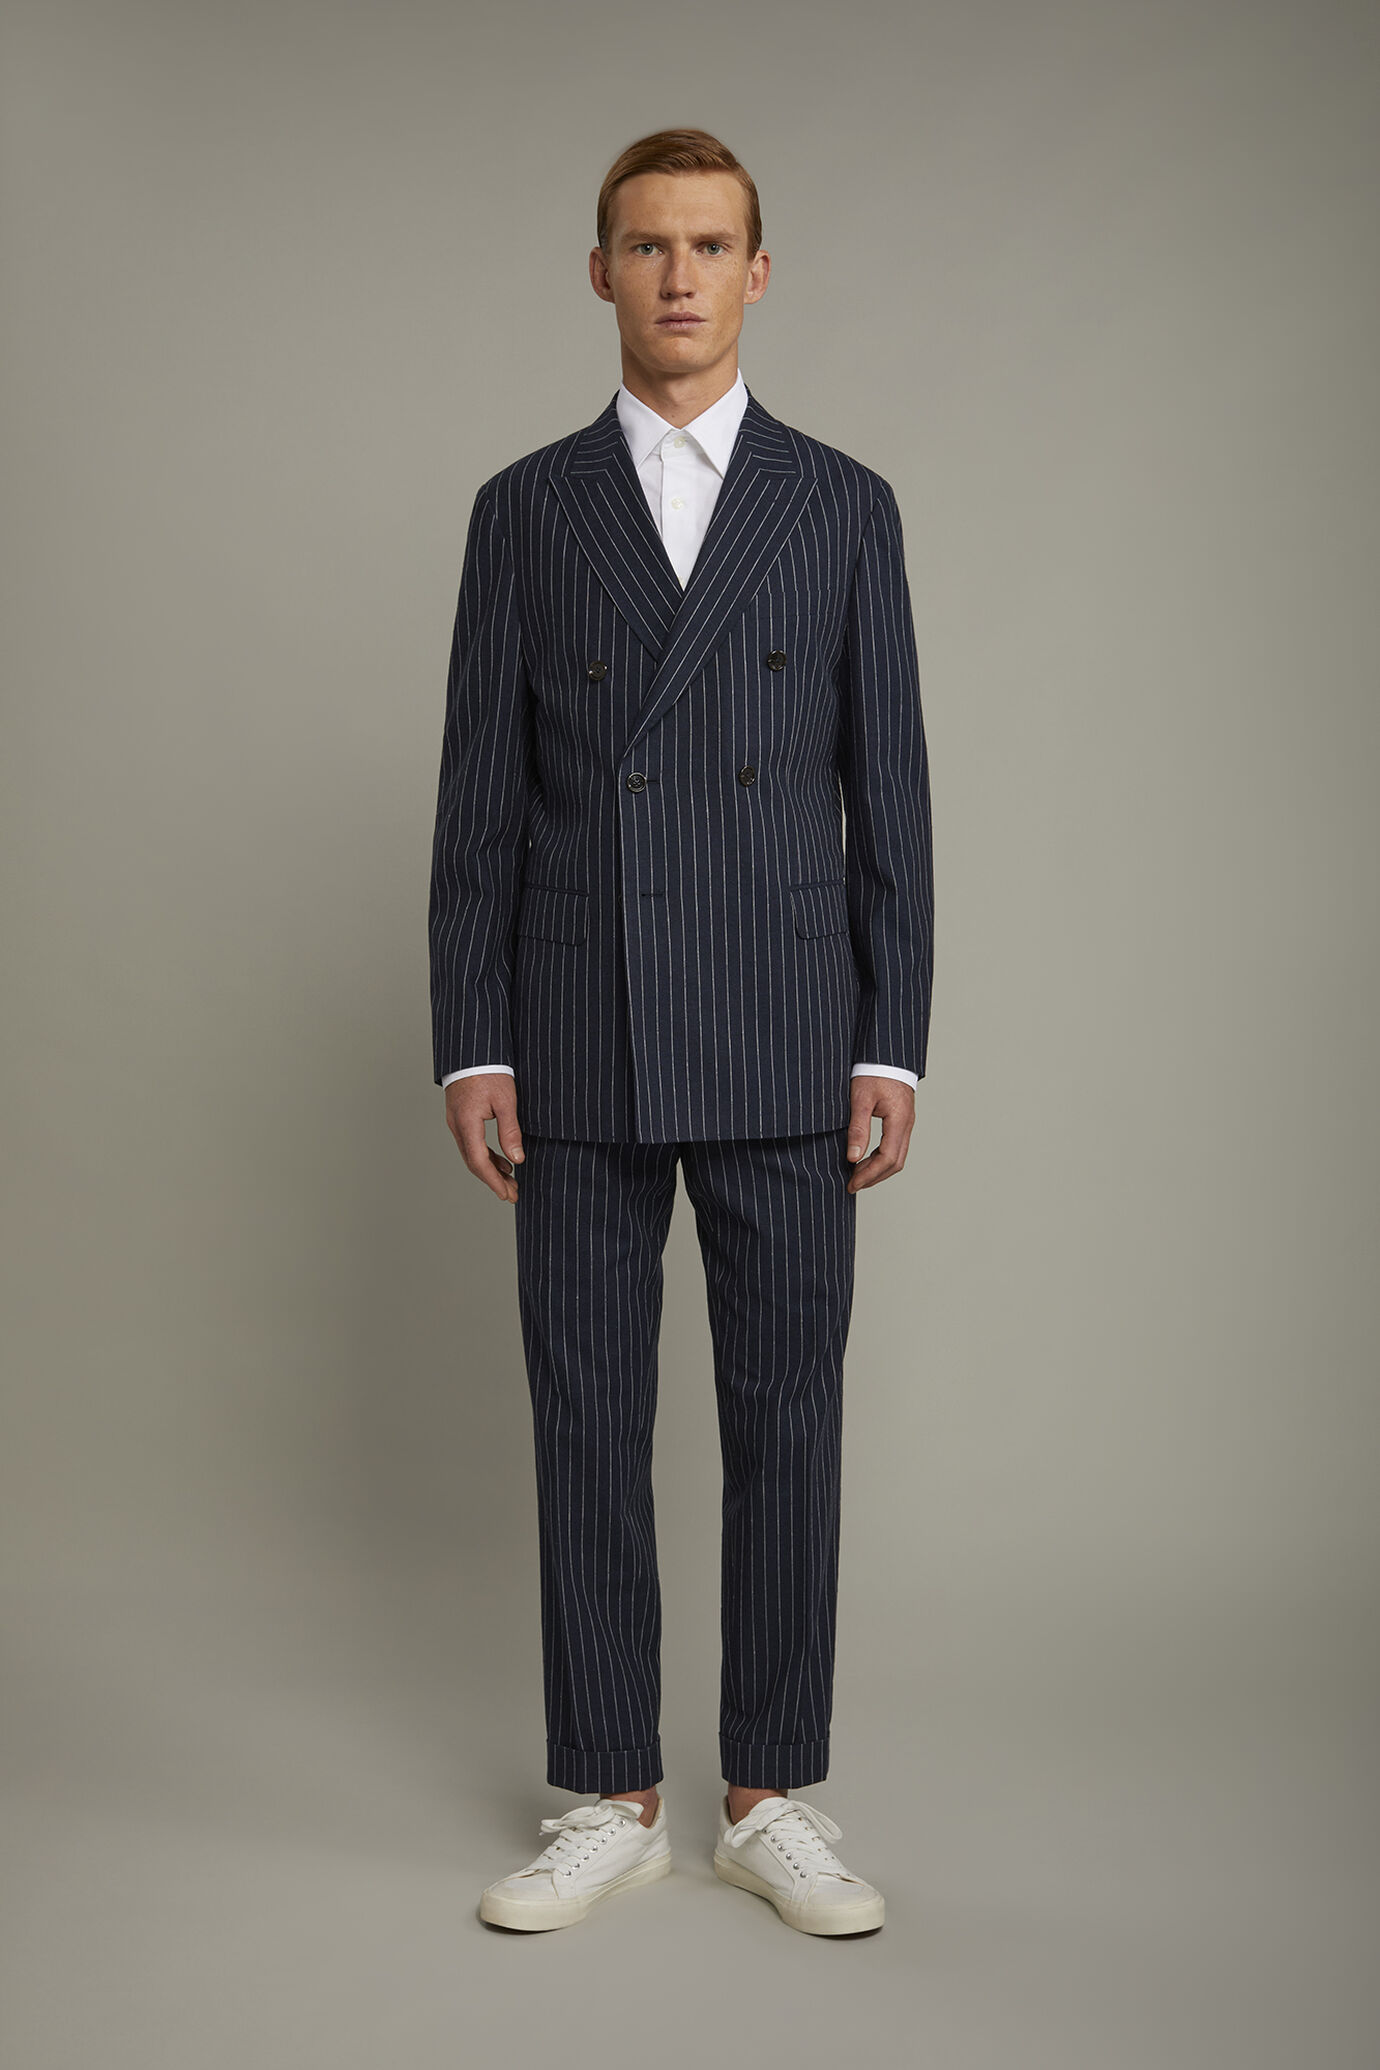 Pantalone classico uomo con doppia pince tessuto lino e cotone con disegno gessato regular fit image number 2